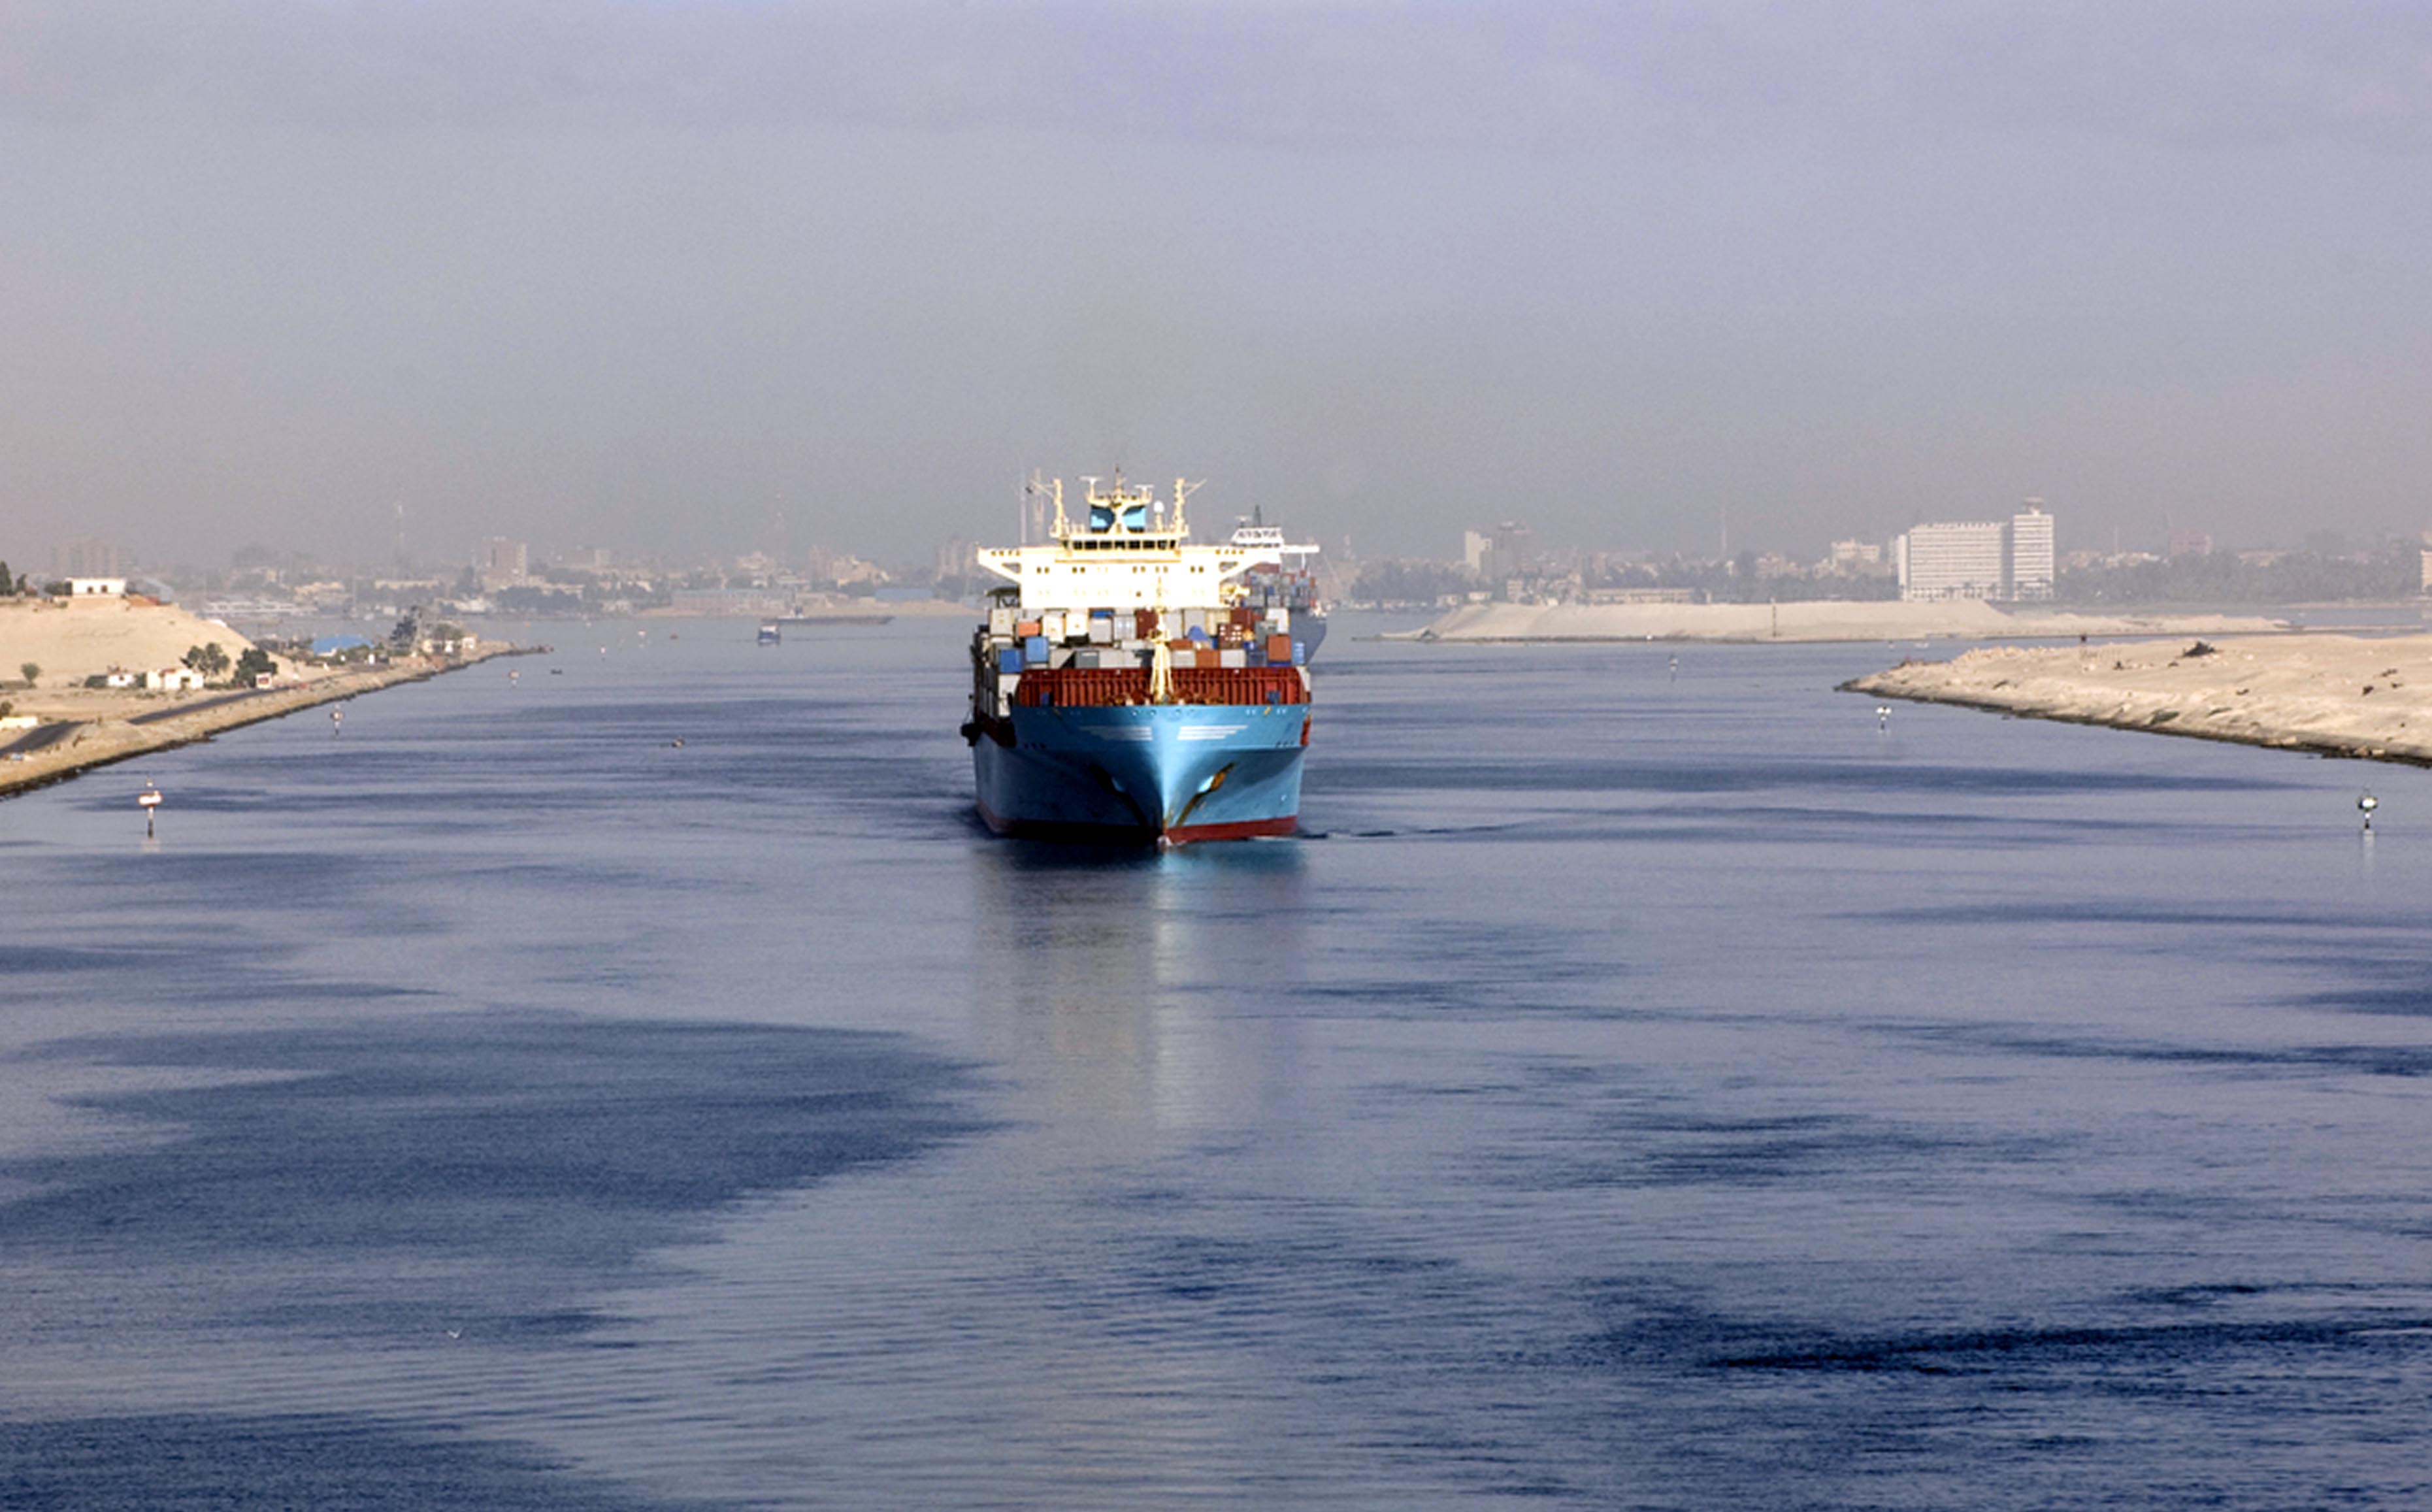 Egypt’s Suez canal generates revenues of $6.24 billion